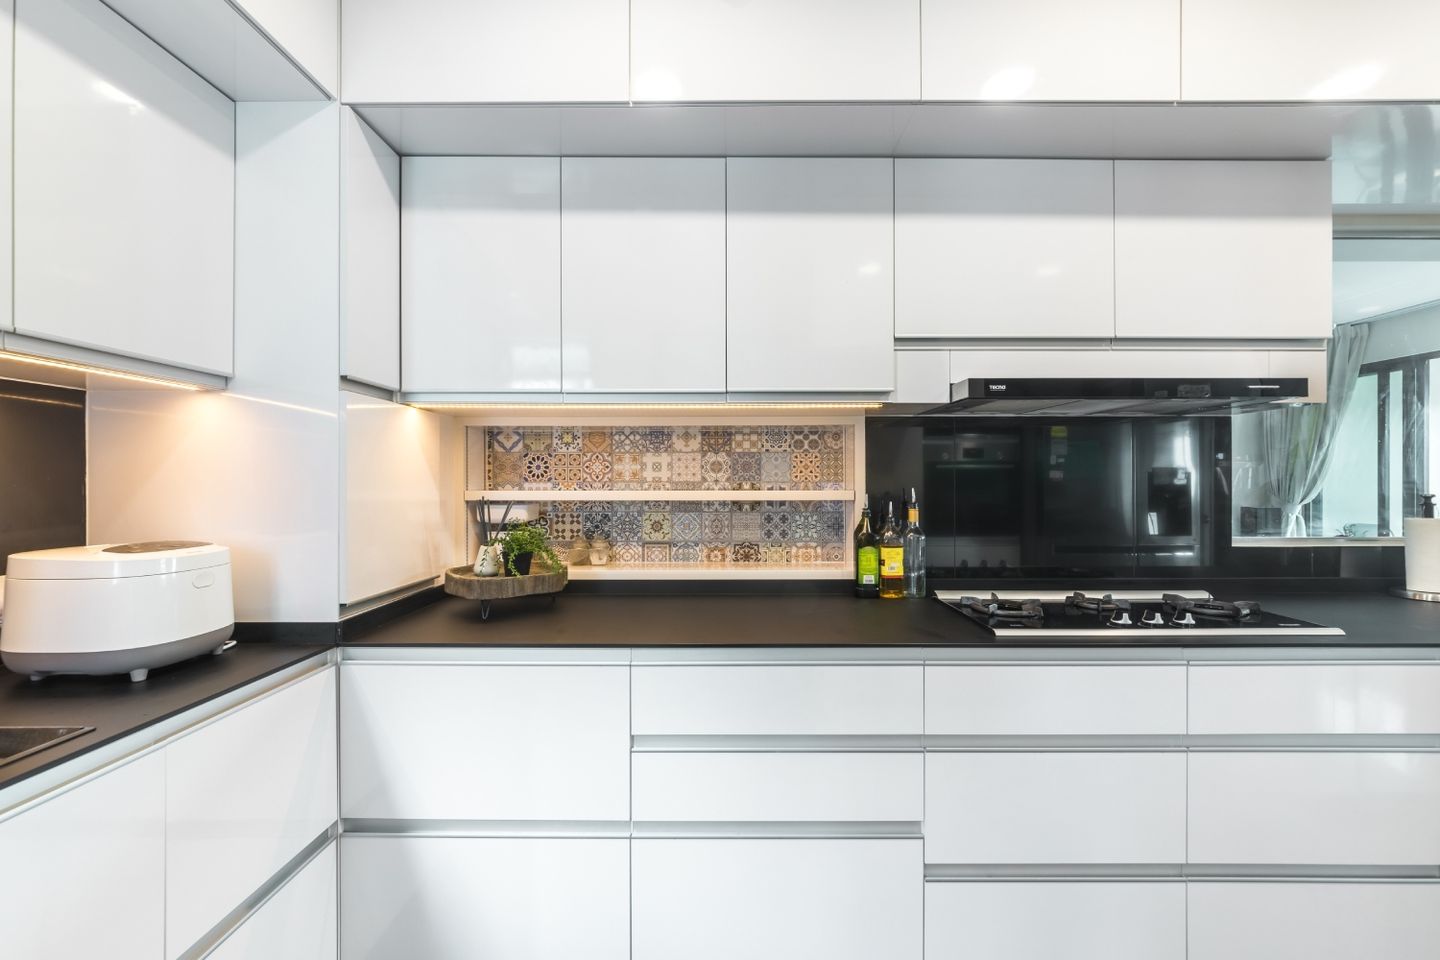 Modern Parallel Kitchen Design With White Storage Units